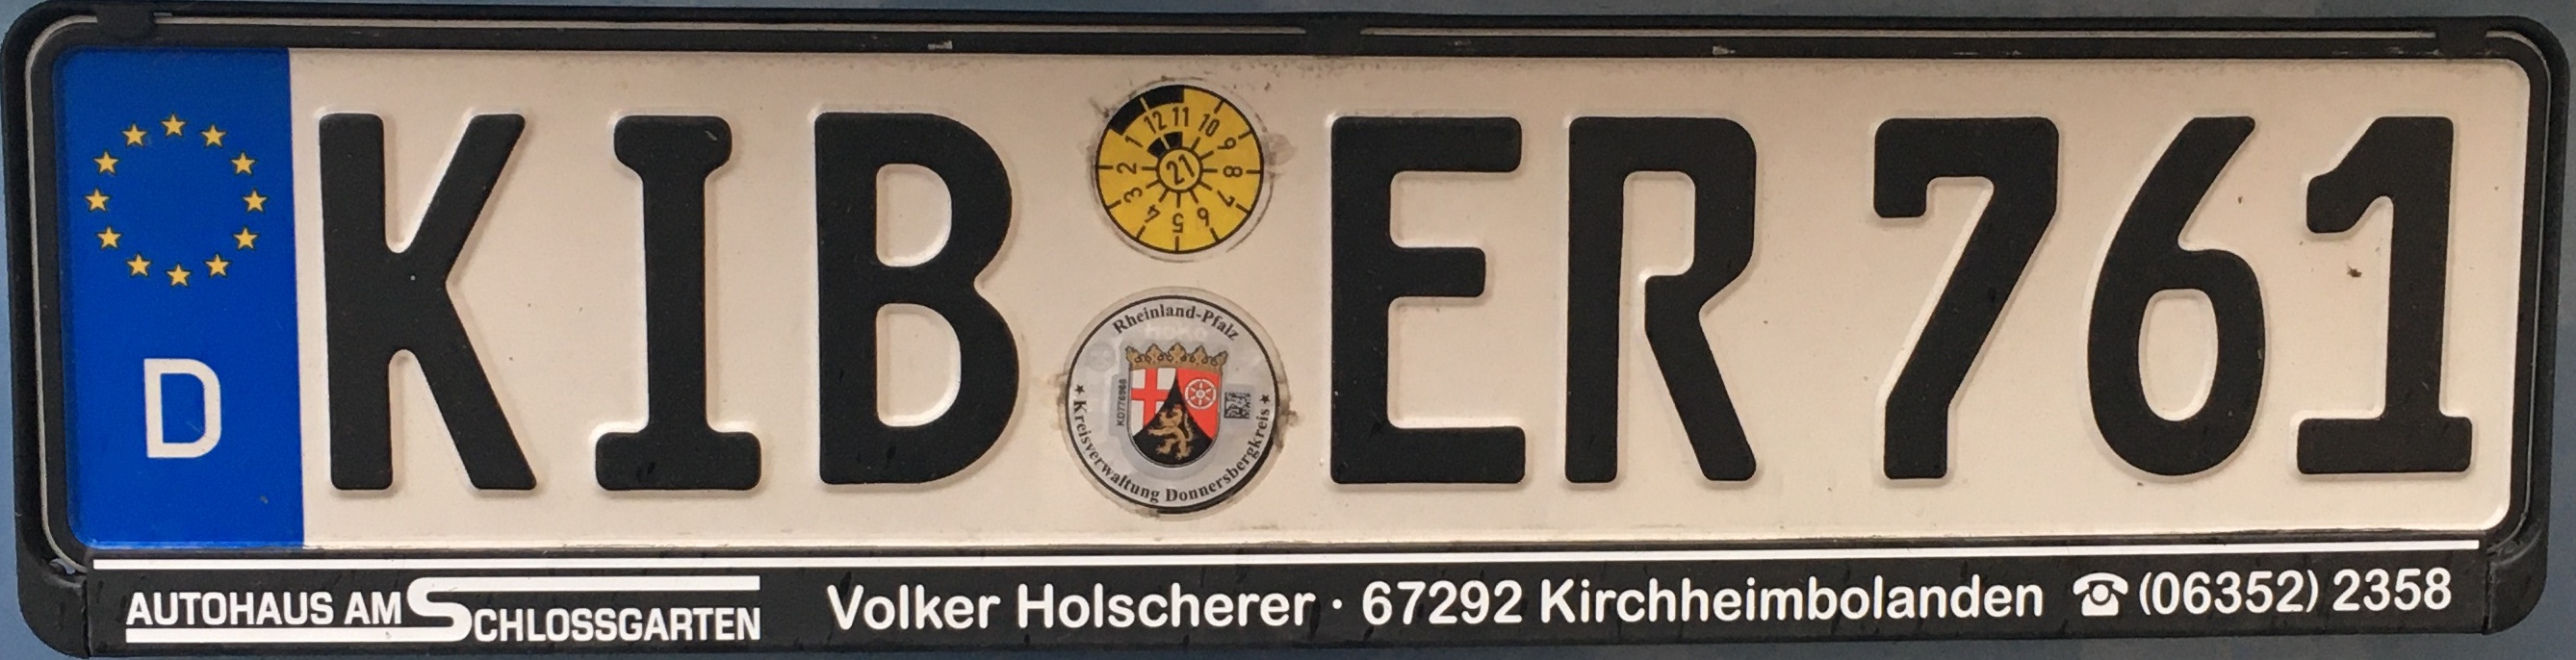 Registrační značky Německo - KIB - Donnersbergkreis, foto: www.podalnici.cz